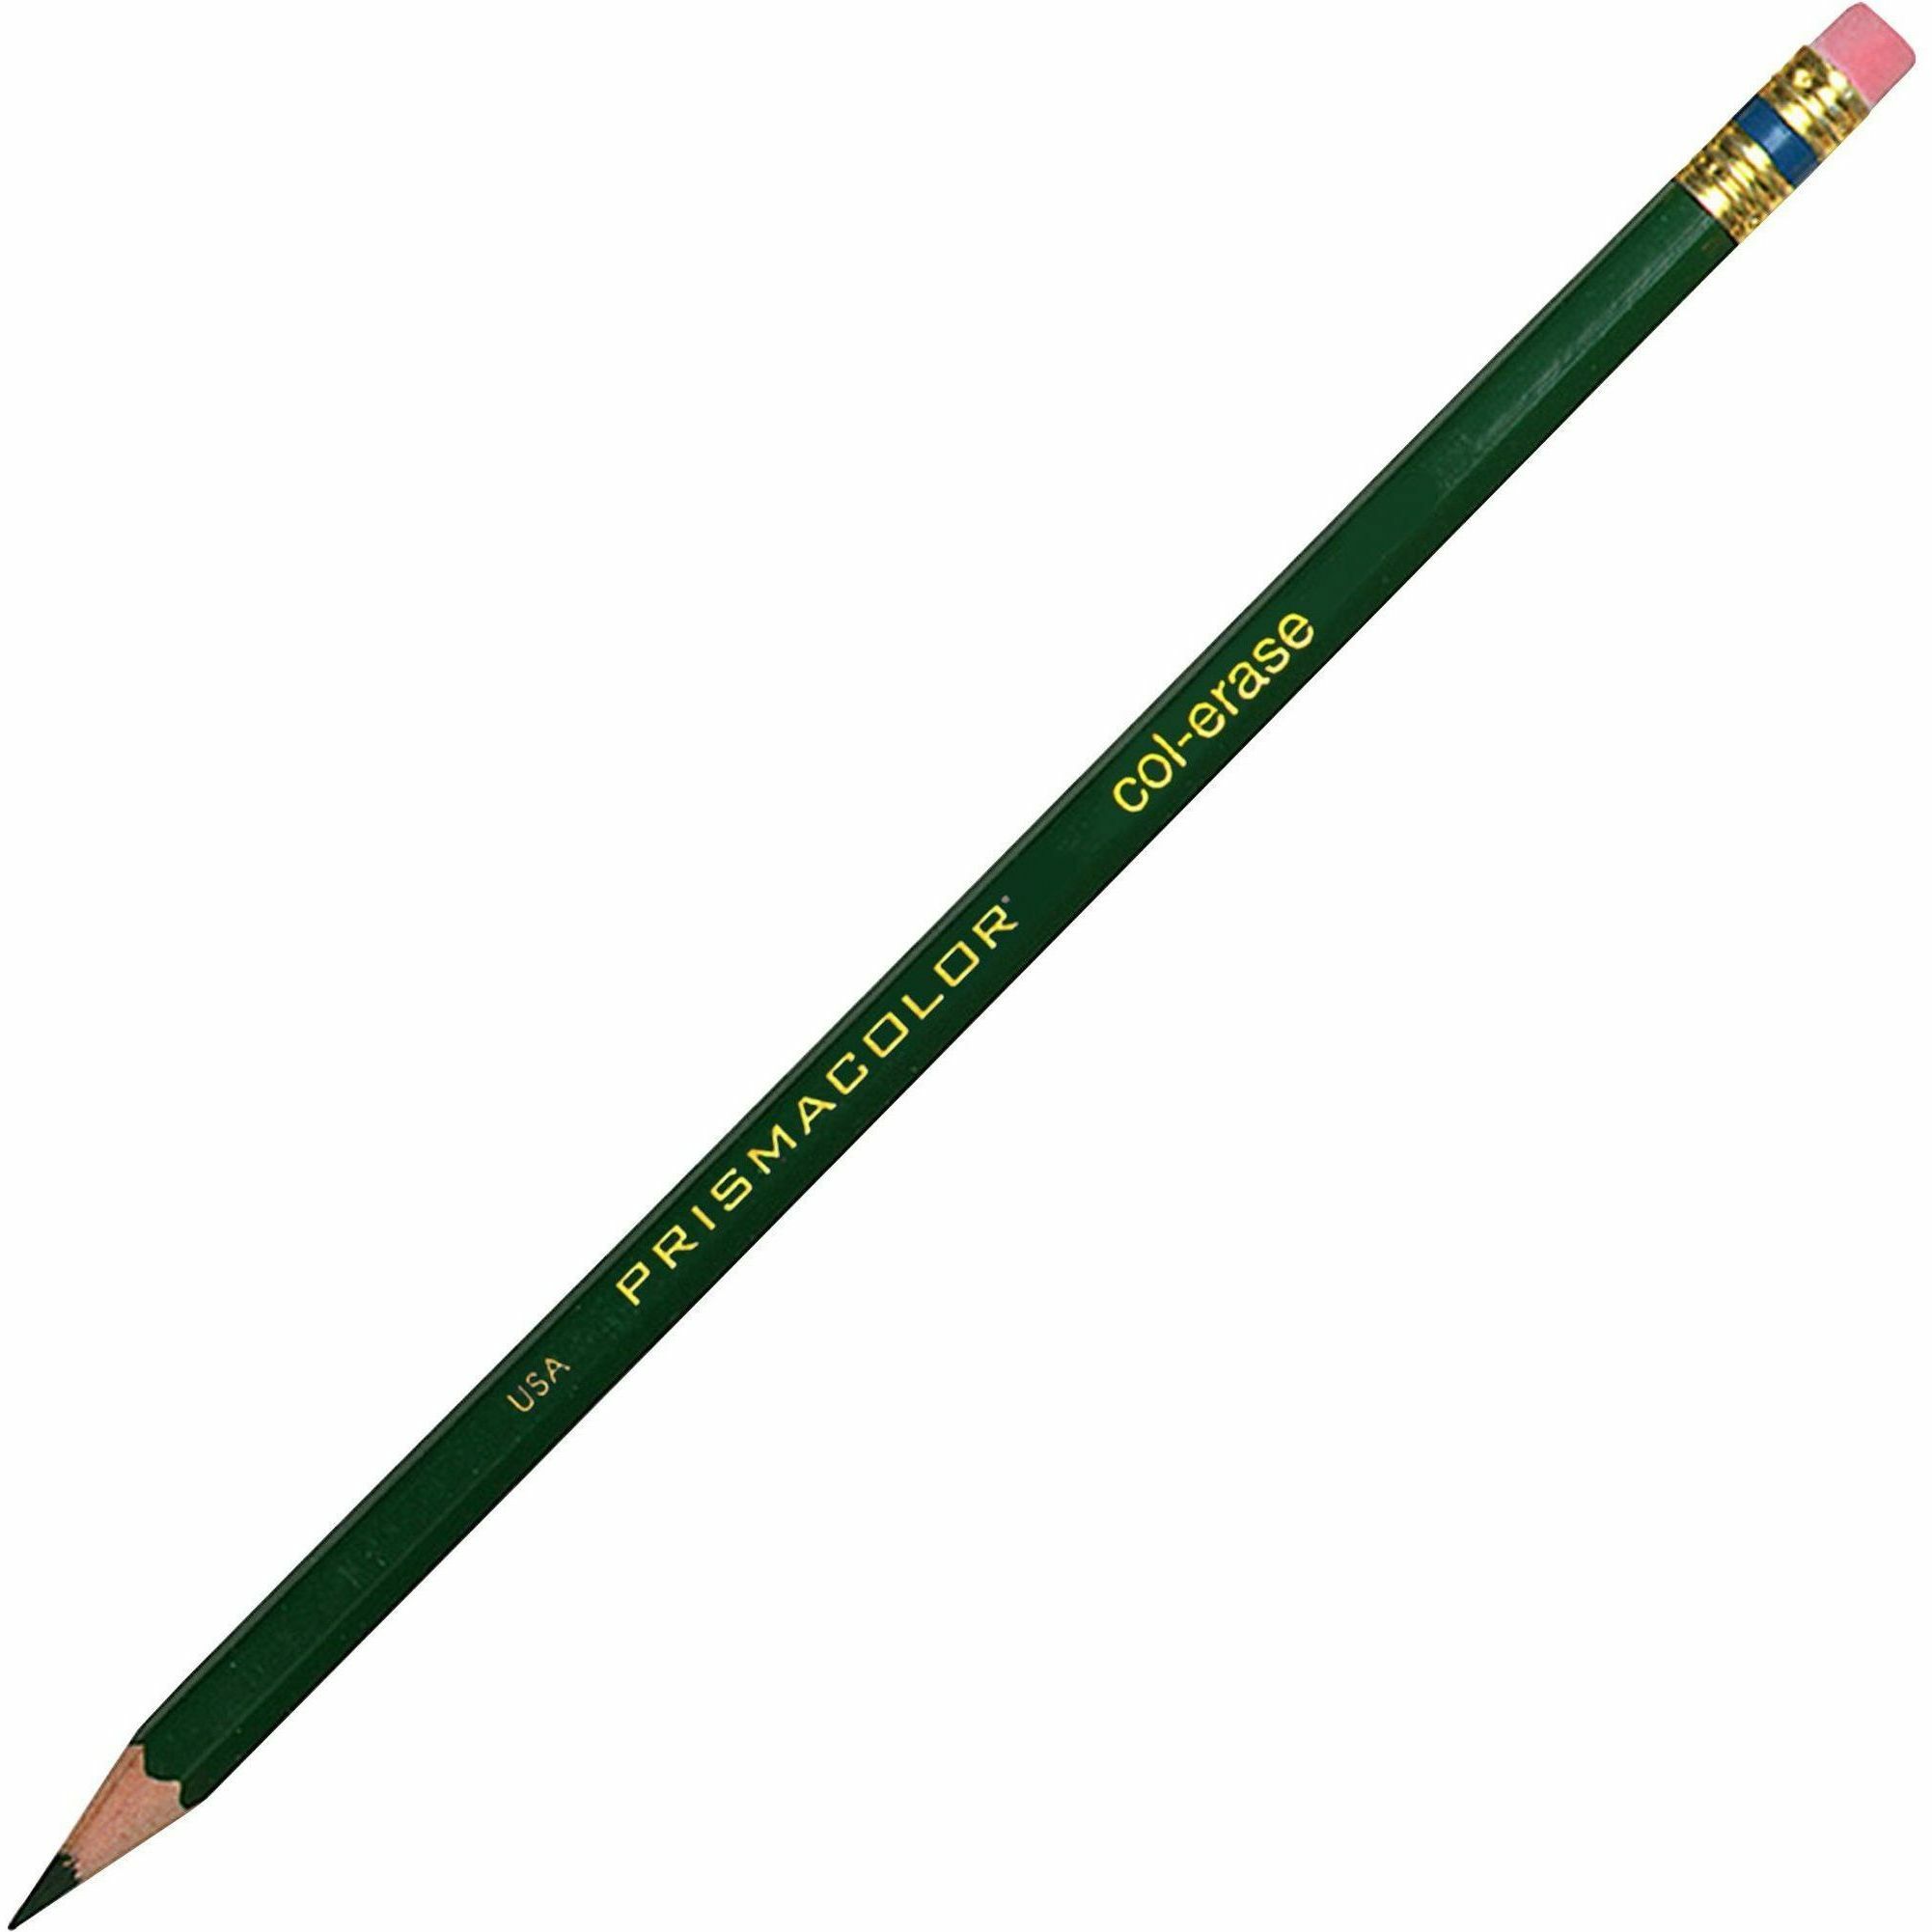 Prismacolor Design Drawing Pencil Set 4 Pencils 1 Eraser - Office Depot